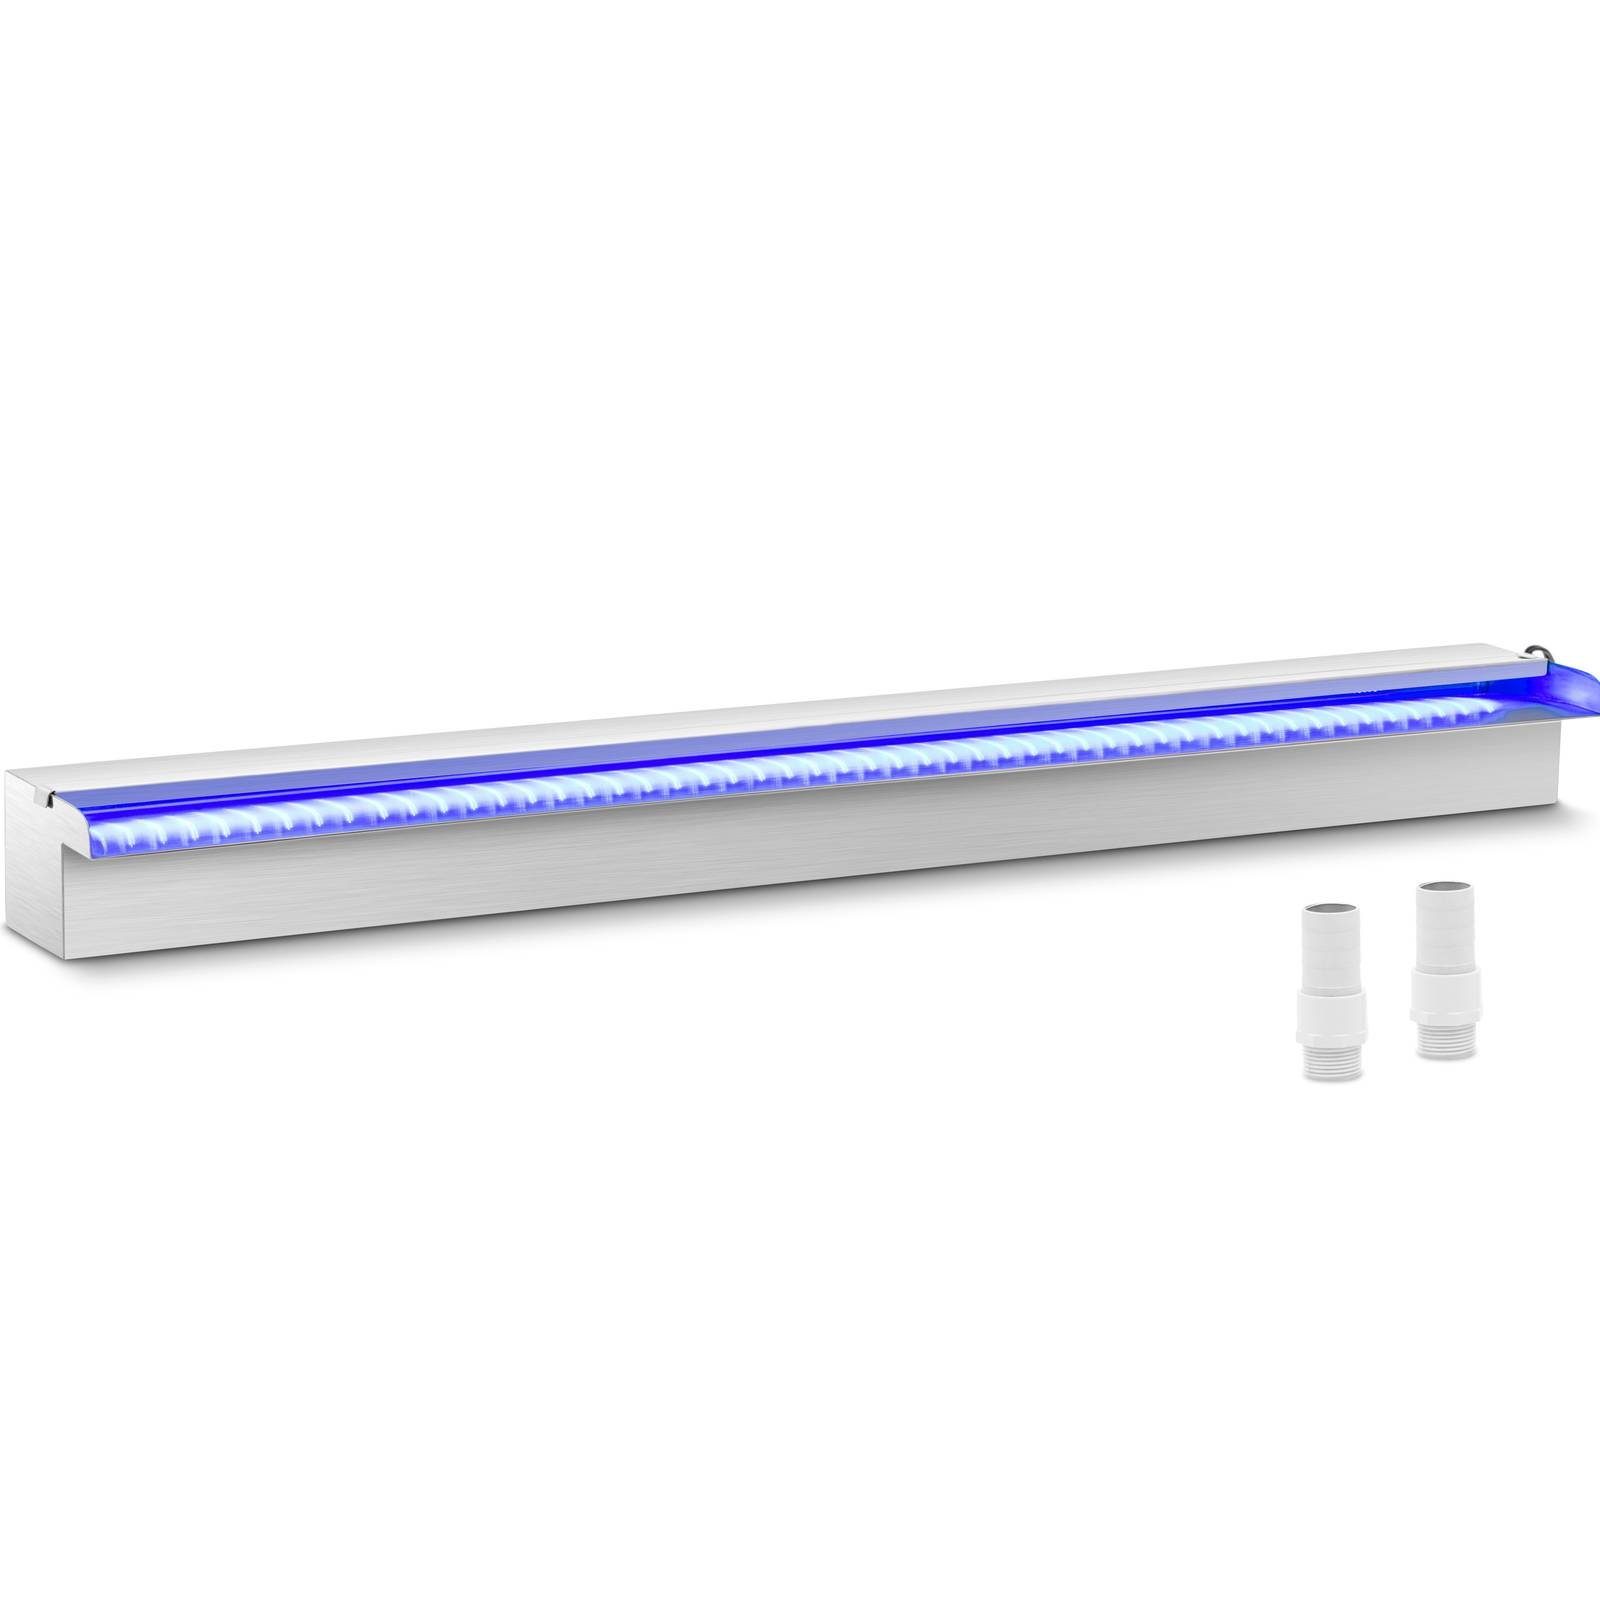 Uniprodo Poolwasserfall Schwalldusche 90cm LED-Beleuchtung - Blau/Weiß offener Wasserauslauf